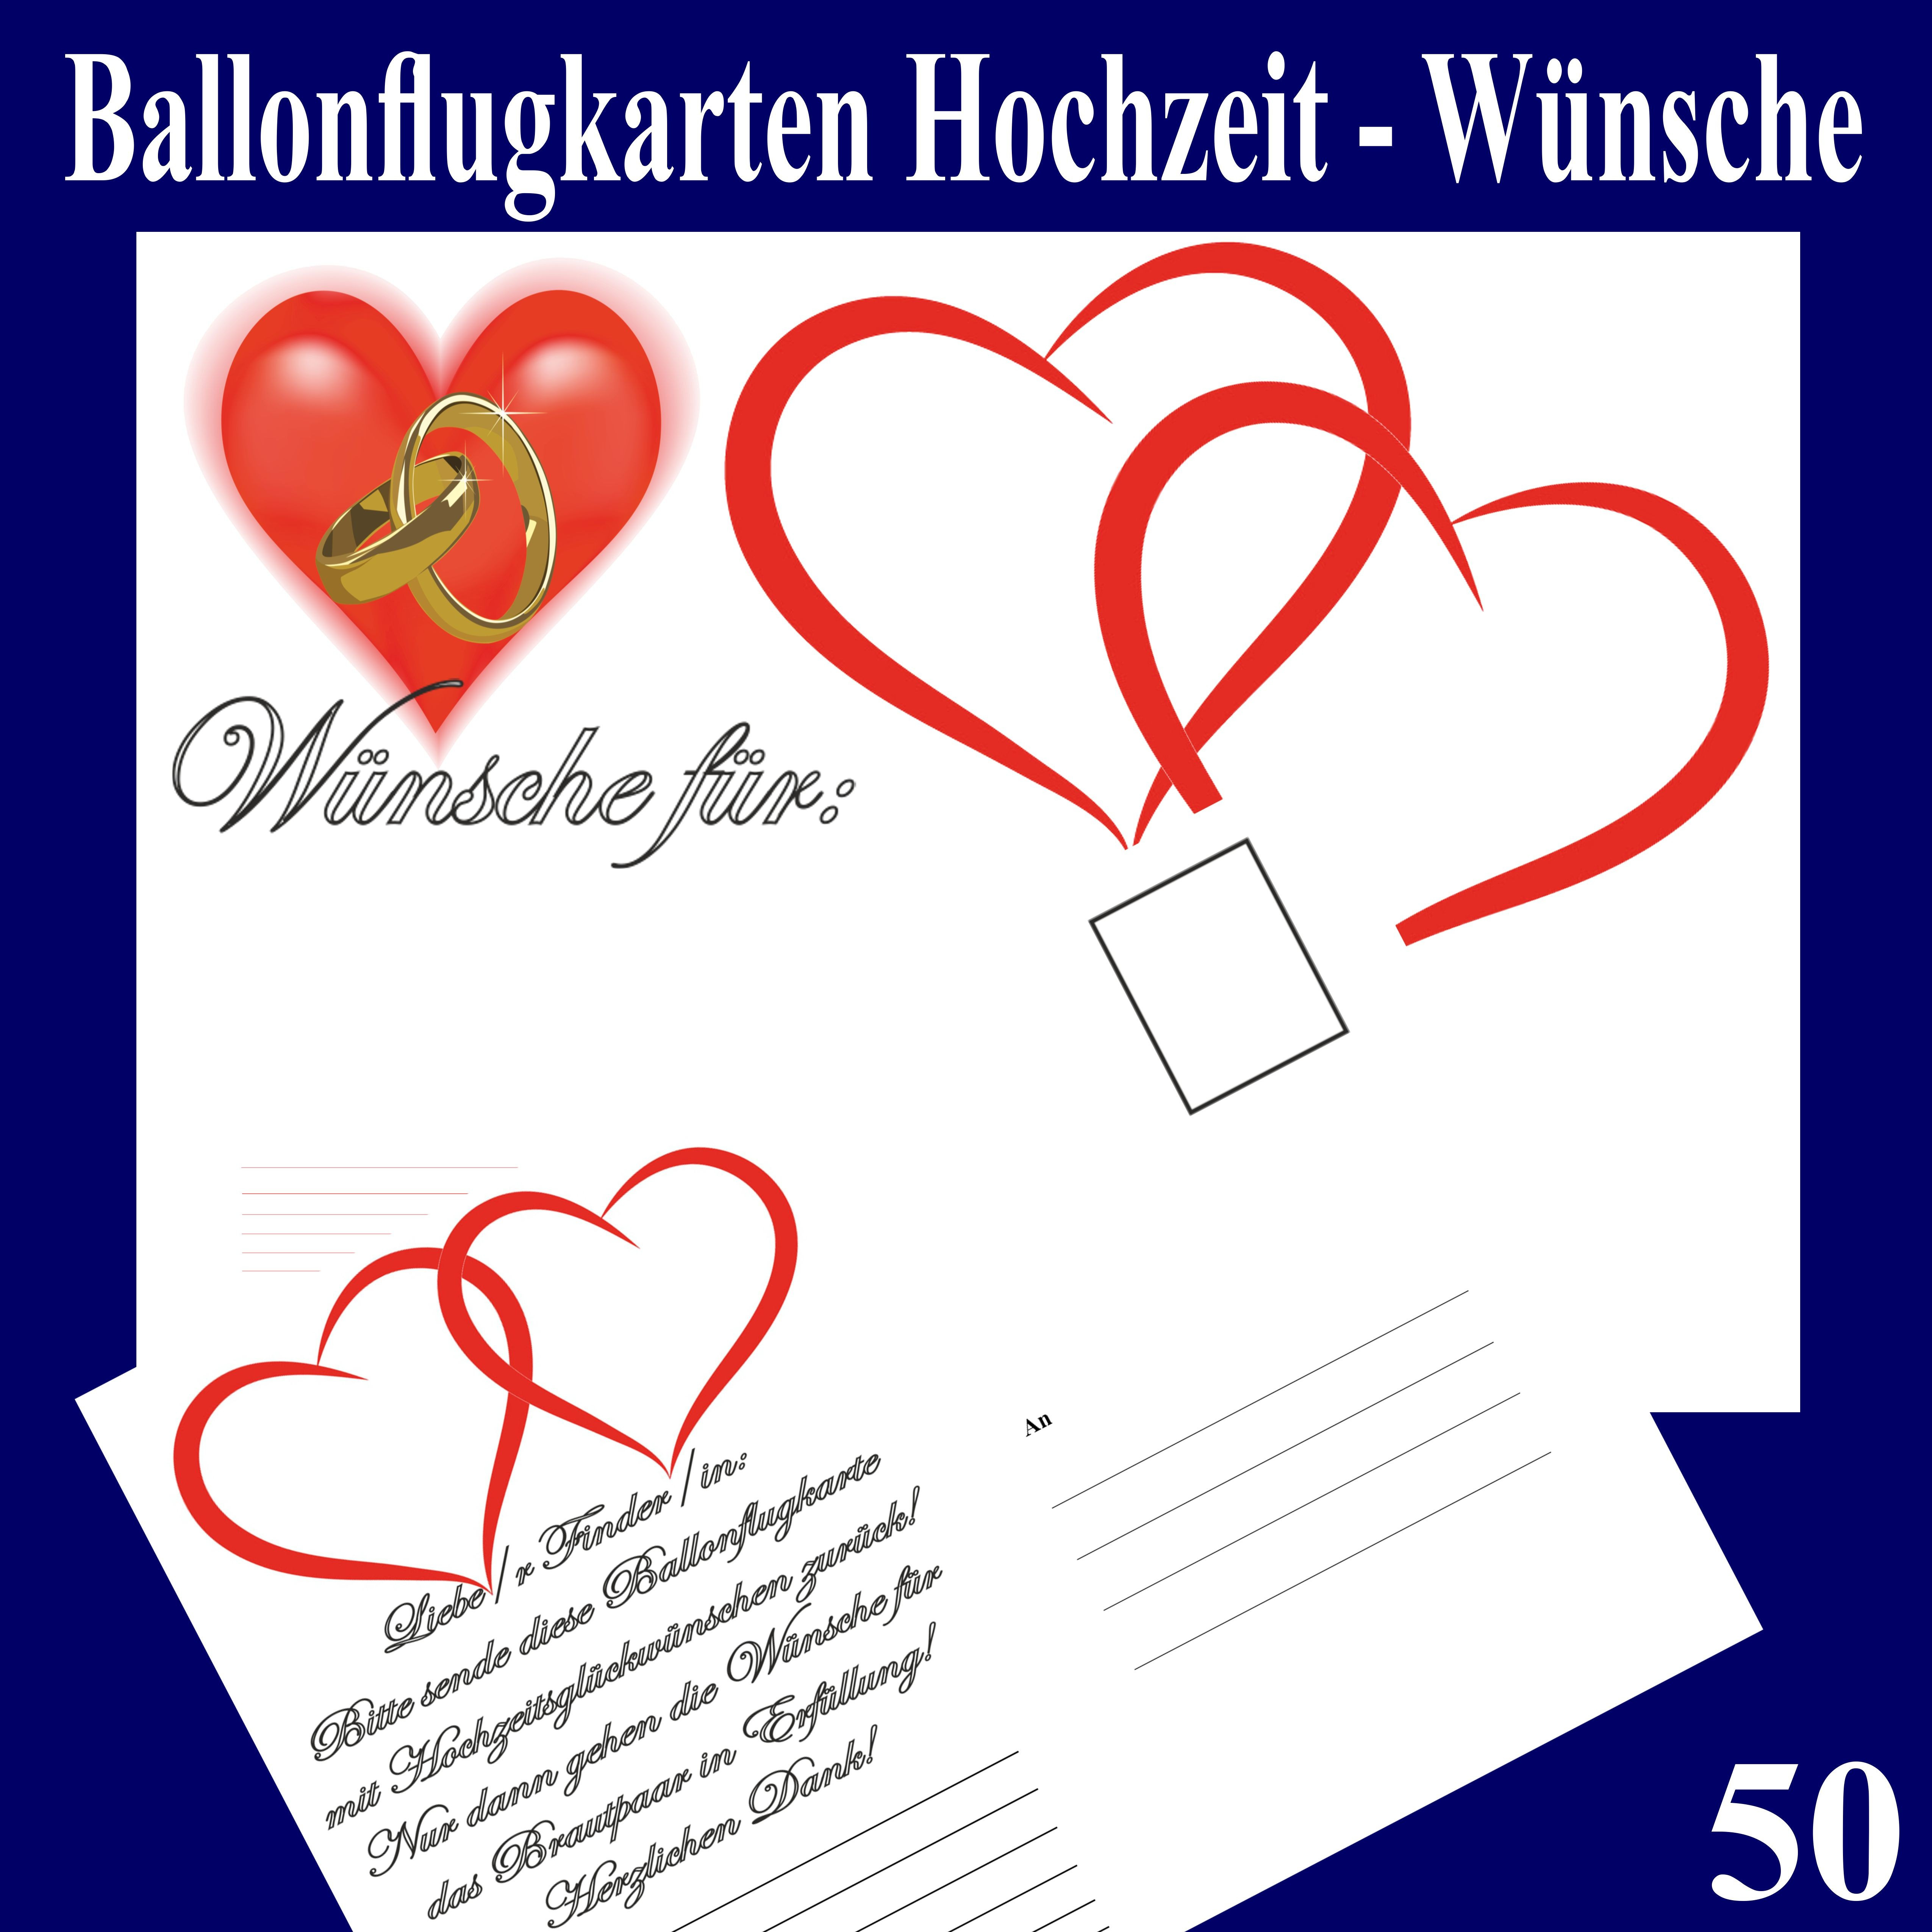 Hochzeitswünsche Für Das Brautpaar
 Ballonflugkarten Hochzeit Wünsche für das Brautpaar 50